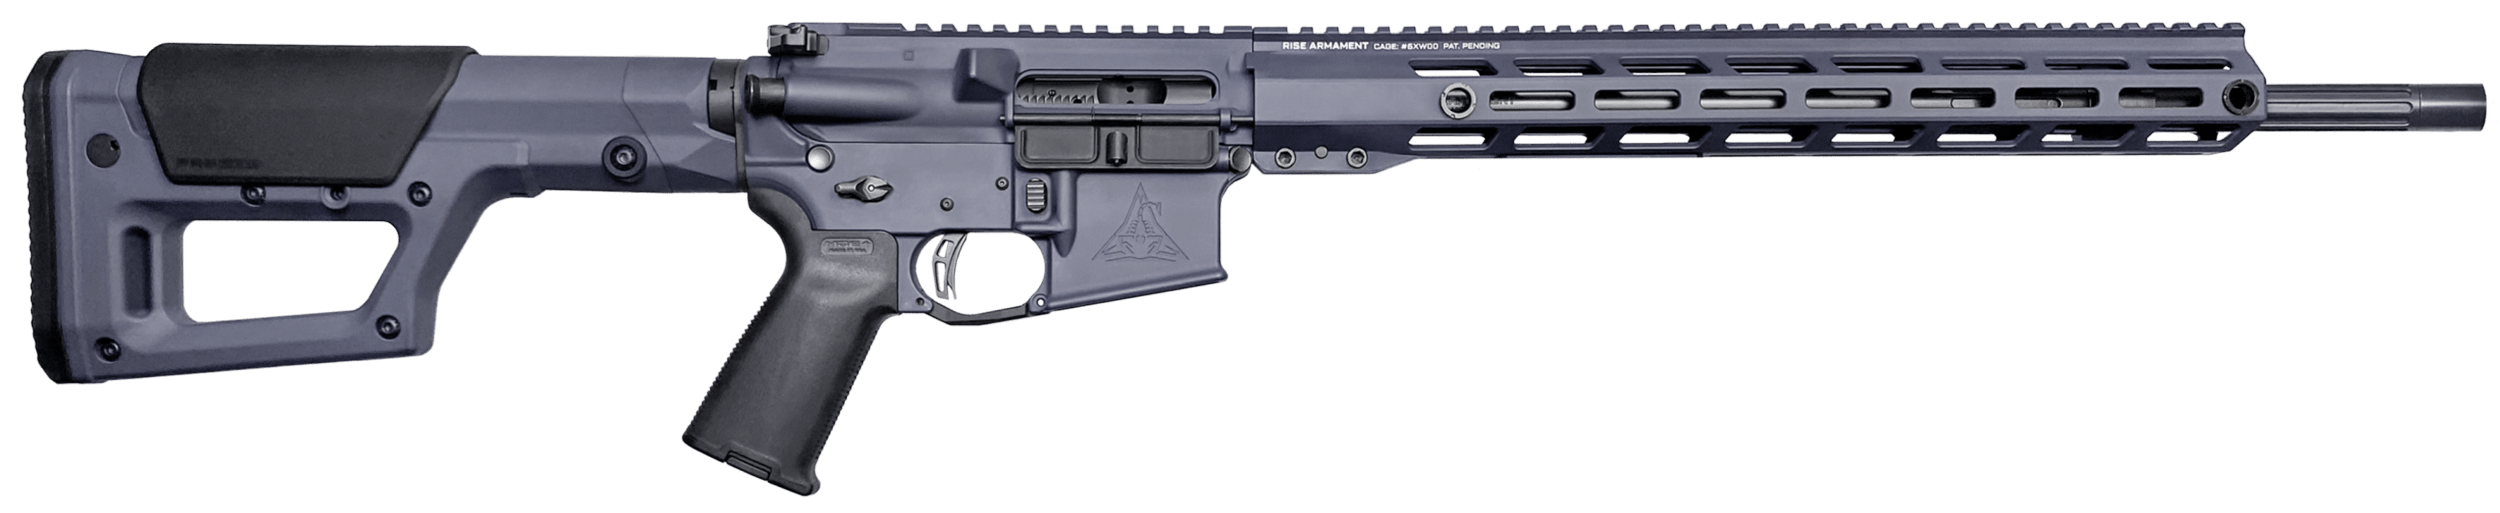 Rise Armament 22 ARC 850043415886 - Semi Auto Rifles at GunBroker.com ...